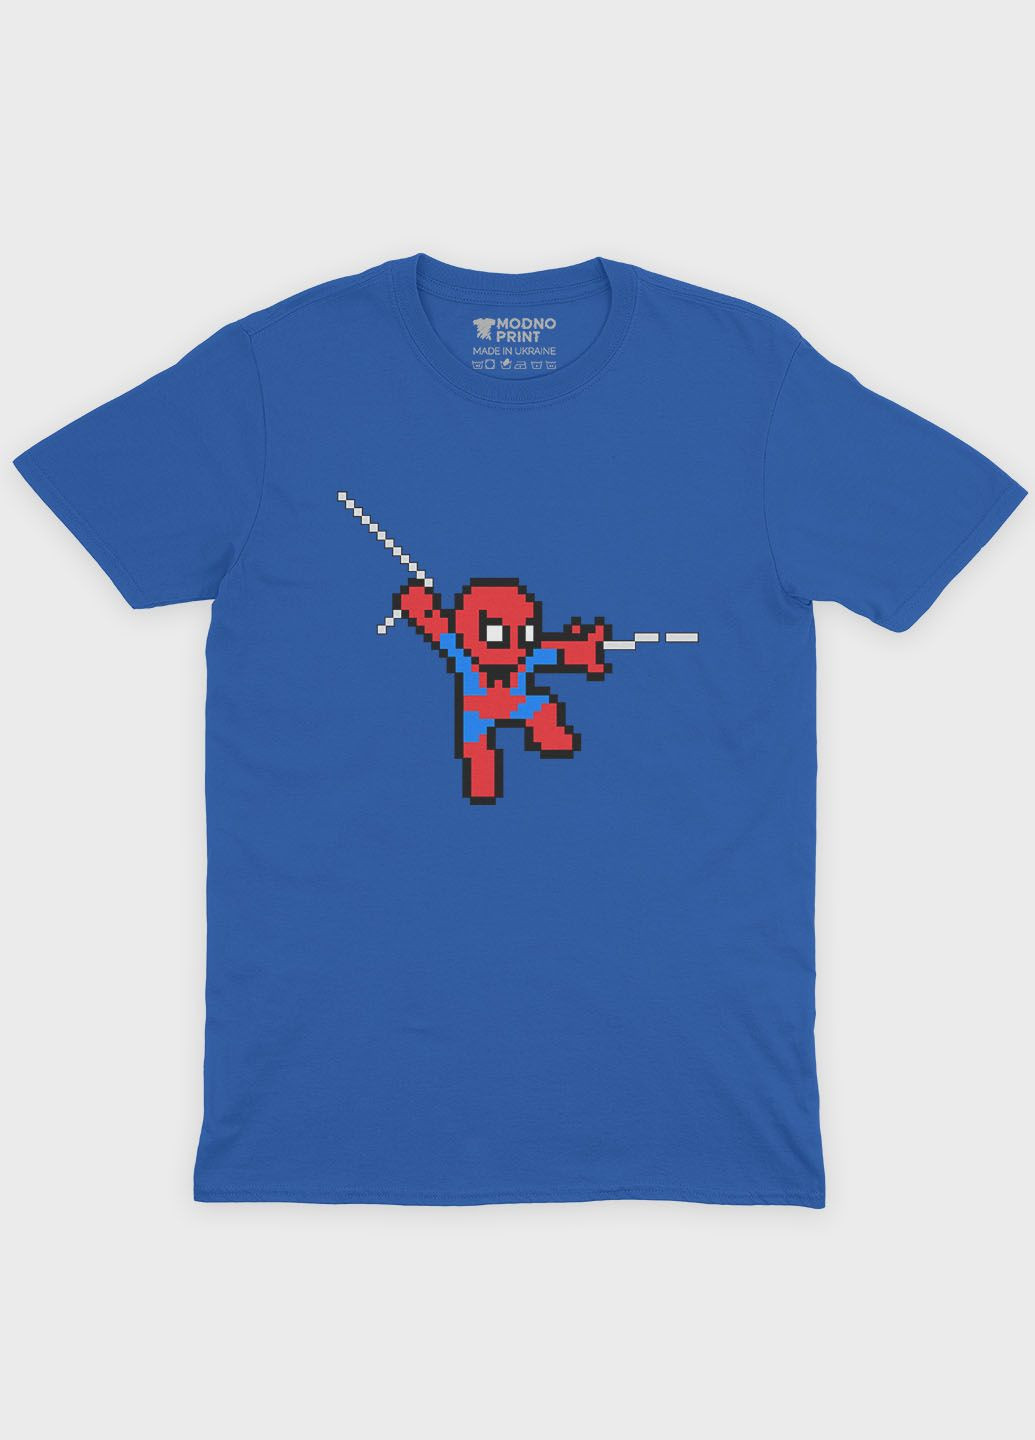 Синяя демисезонная футболка для девочки с принтом супергероя - человек-паук (ts001-1-grr-006-014-111-g) Modno